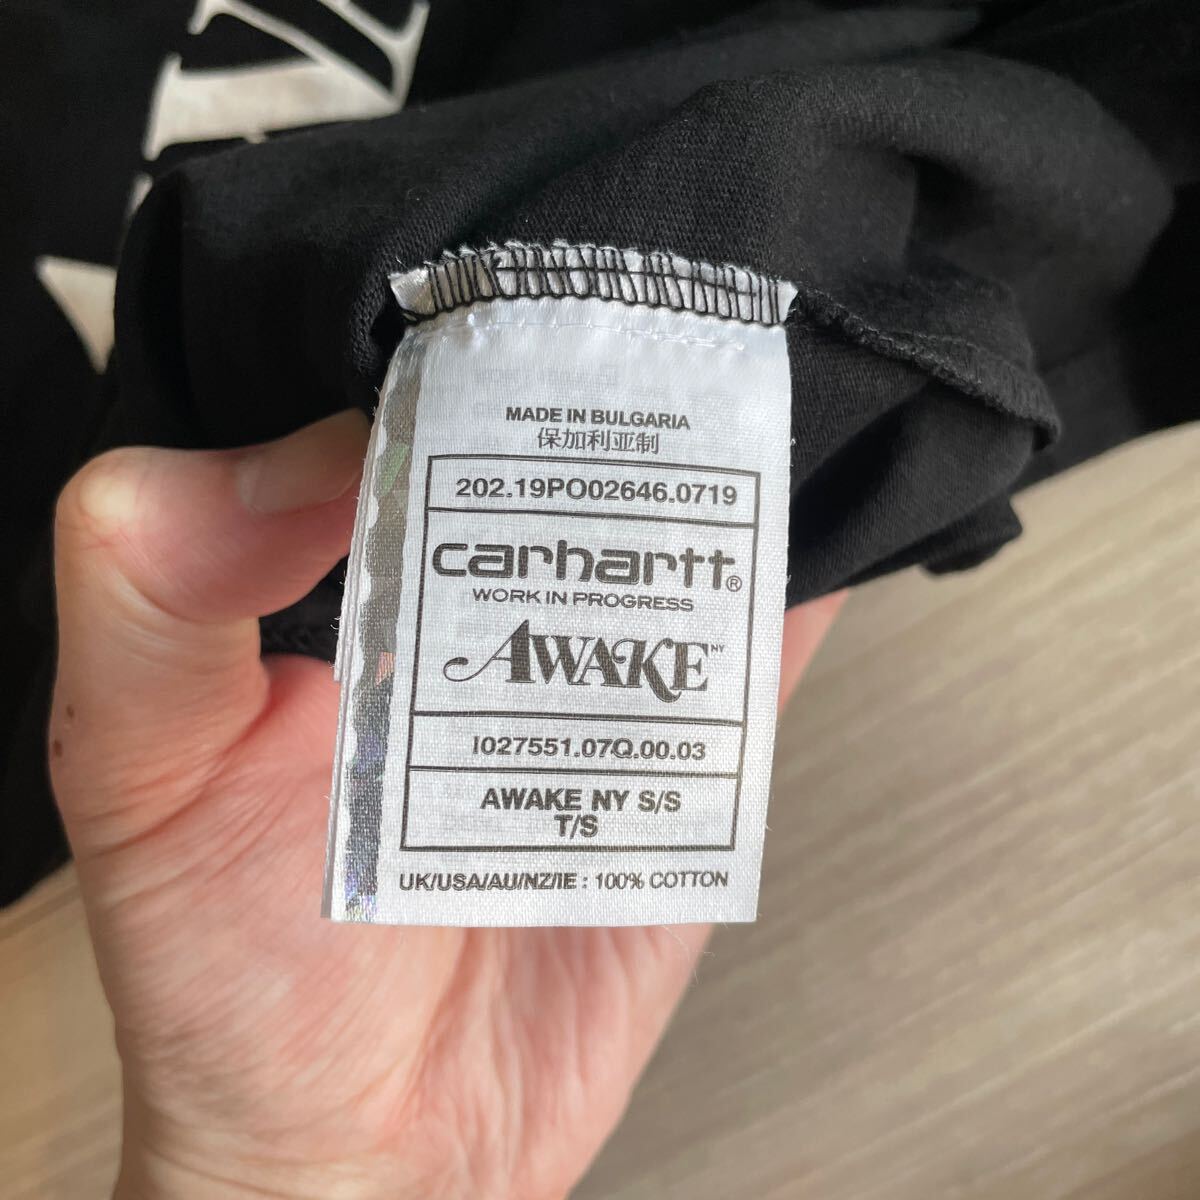 Carhartt カーハート AWAKEコラボTシャツ ブラック Sサイズ_画像5